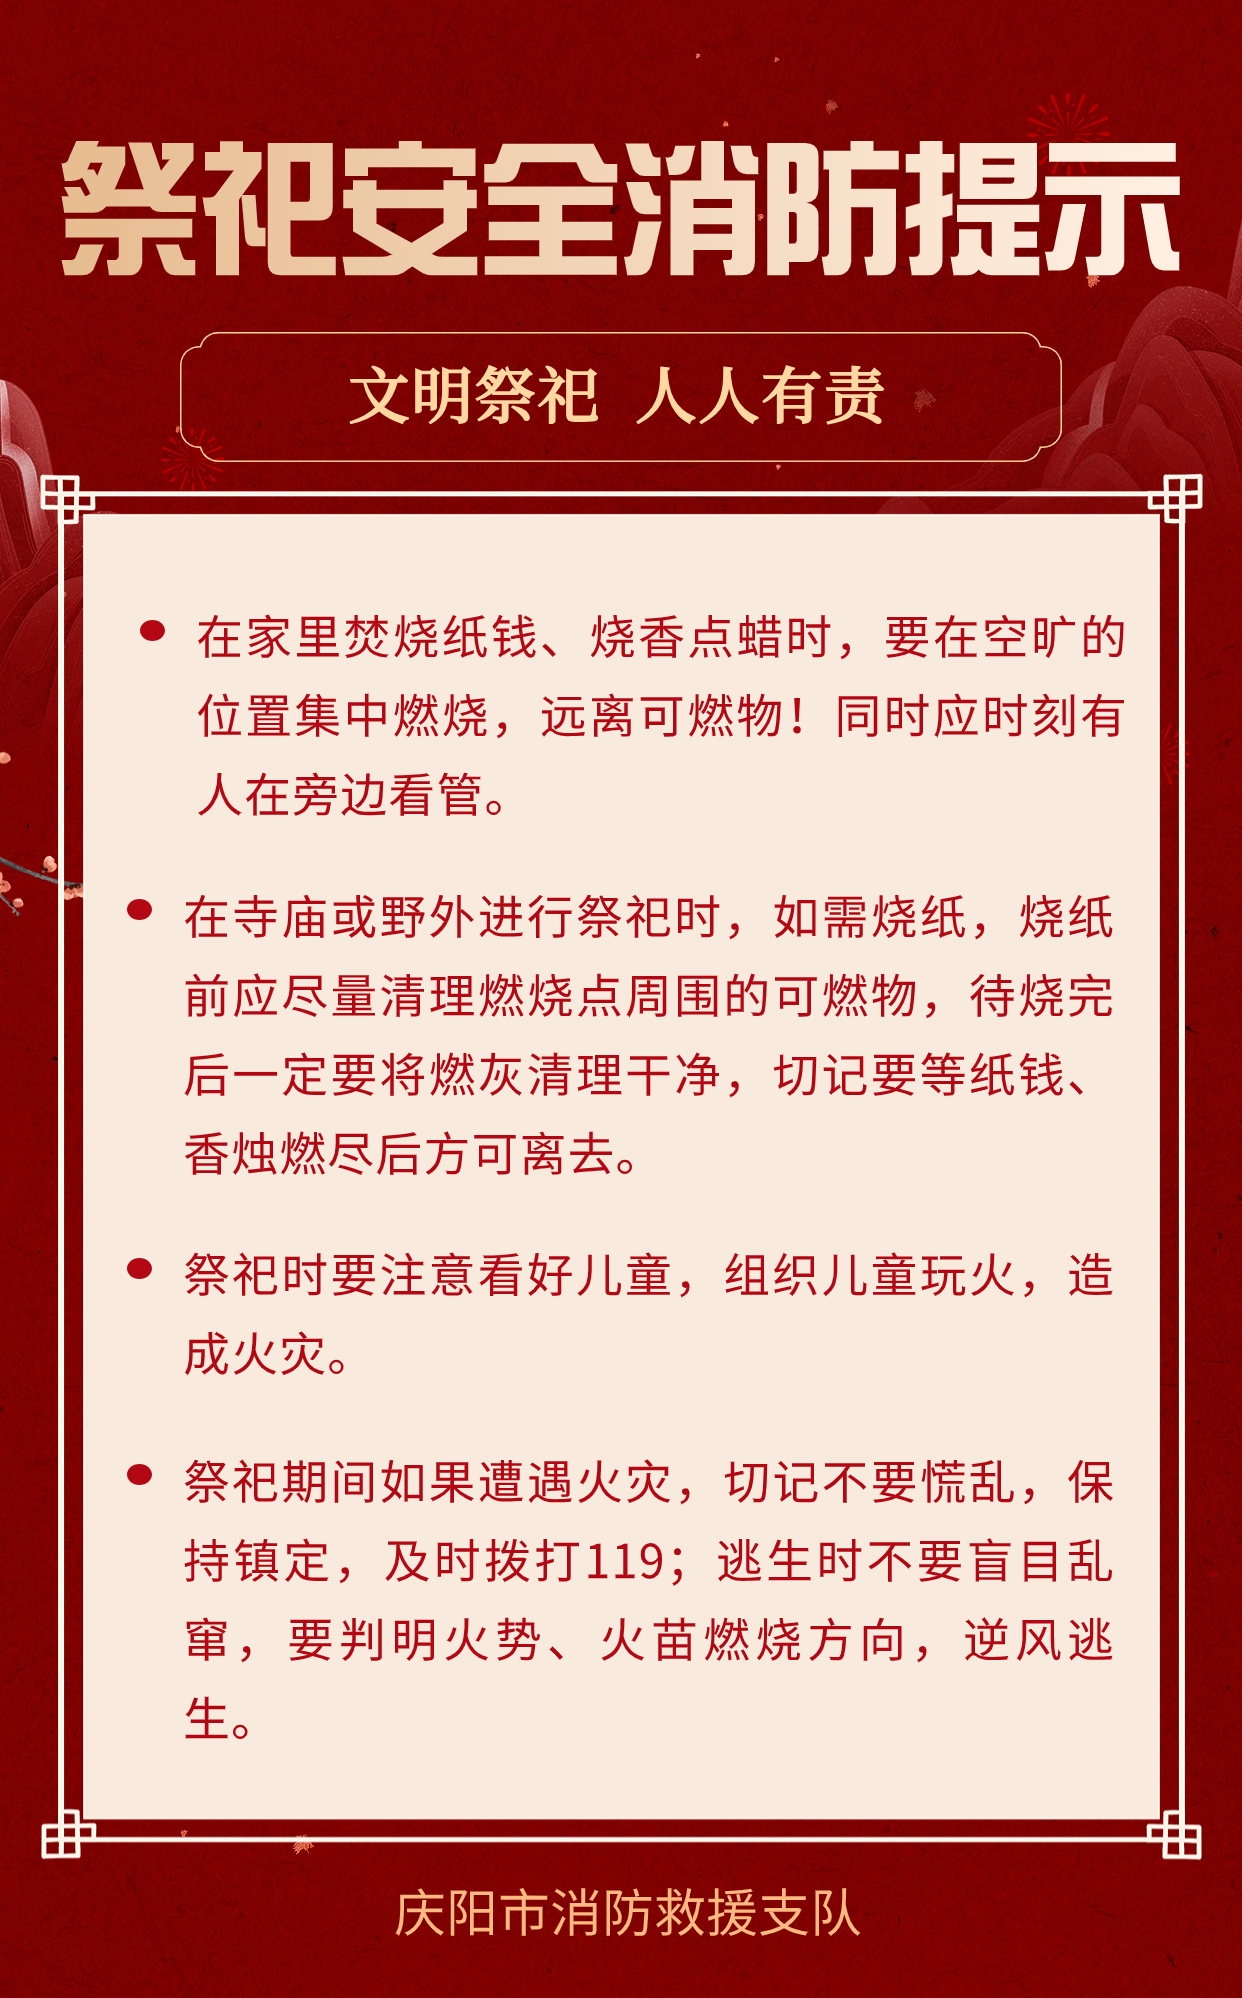 【新春安全提示】春节祭祀安全消防提示